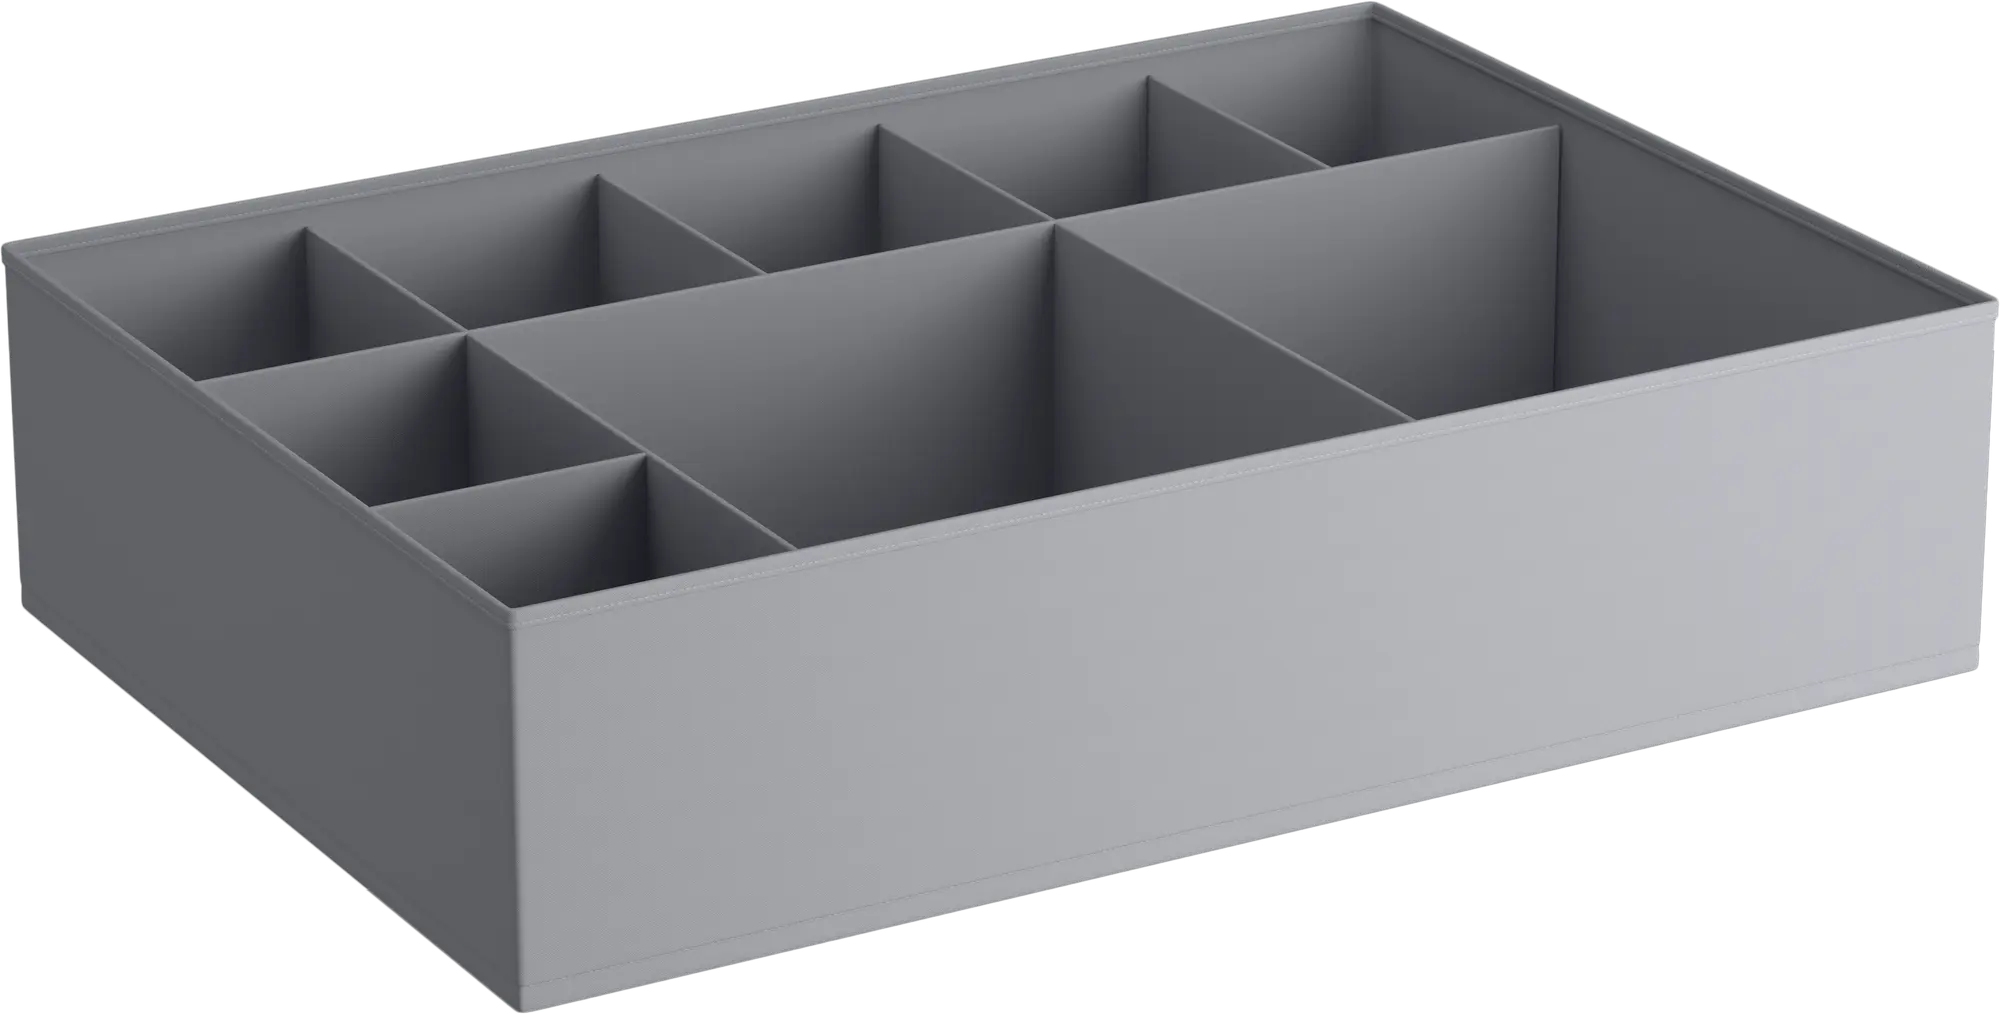 Caja tela SPACEO HOME gris XL 56x16x56(anchoxaltoxfondo)